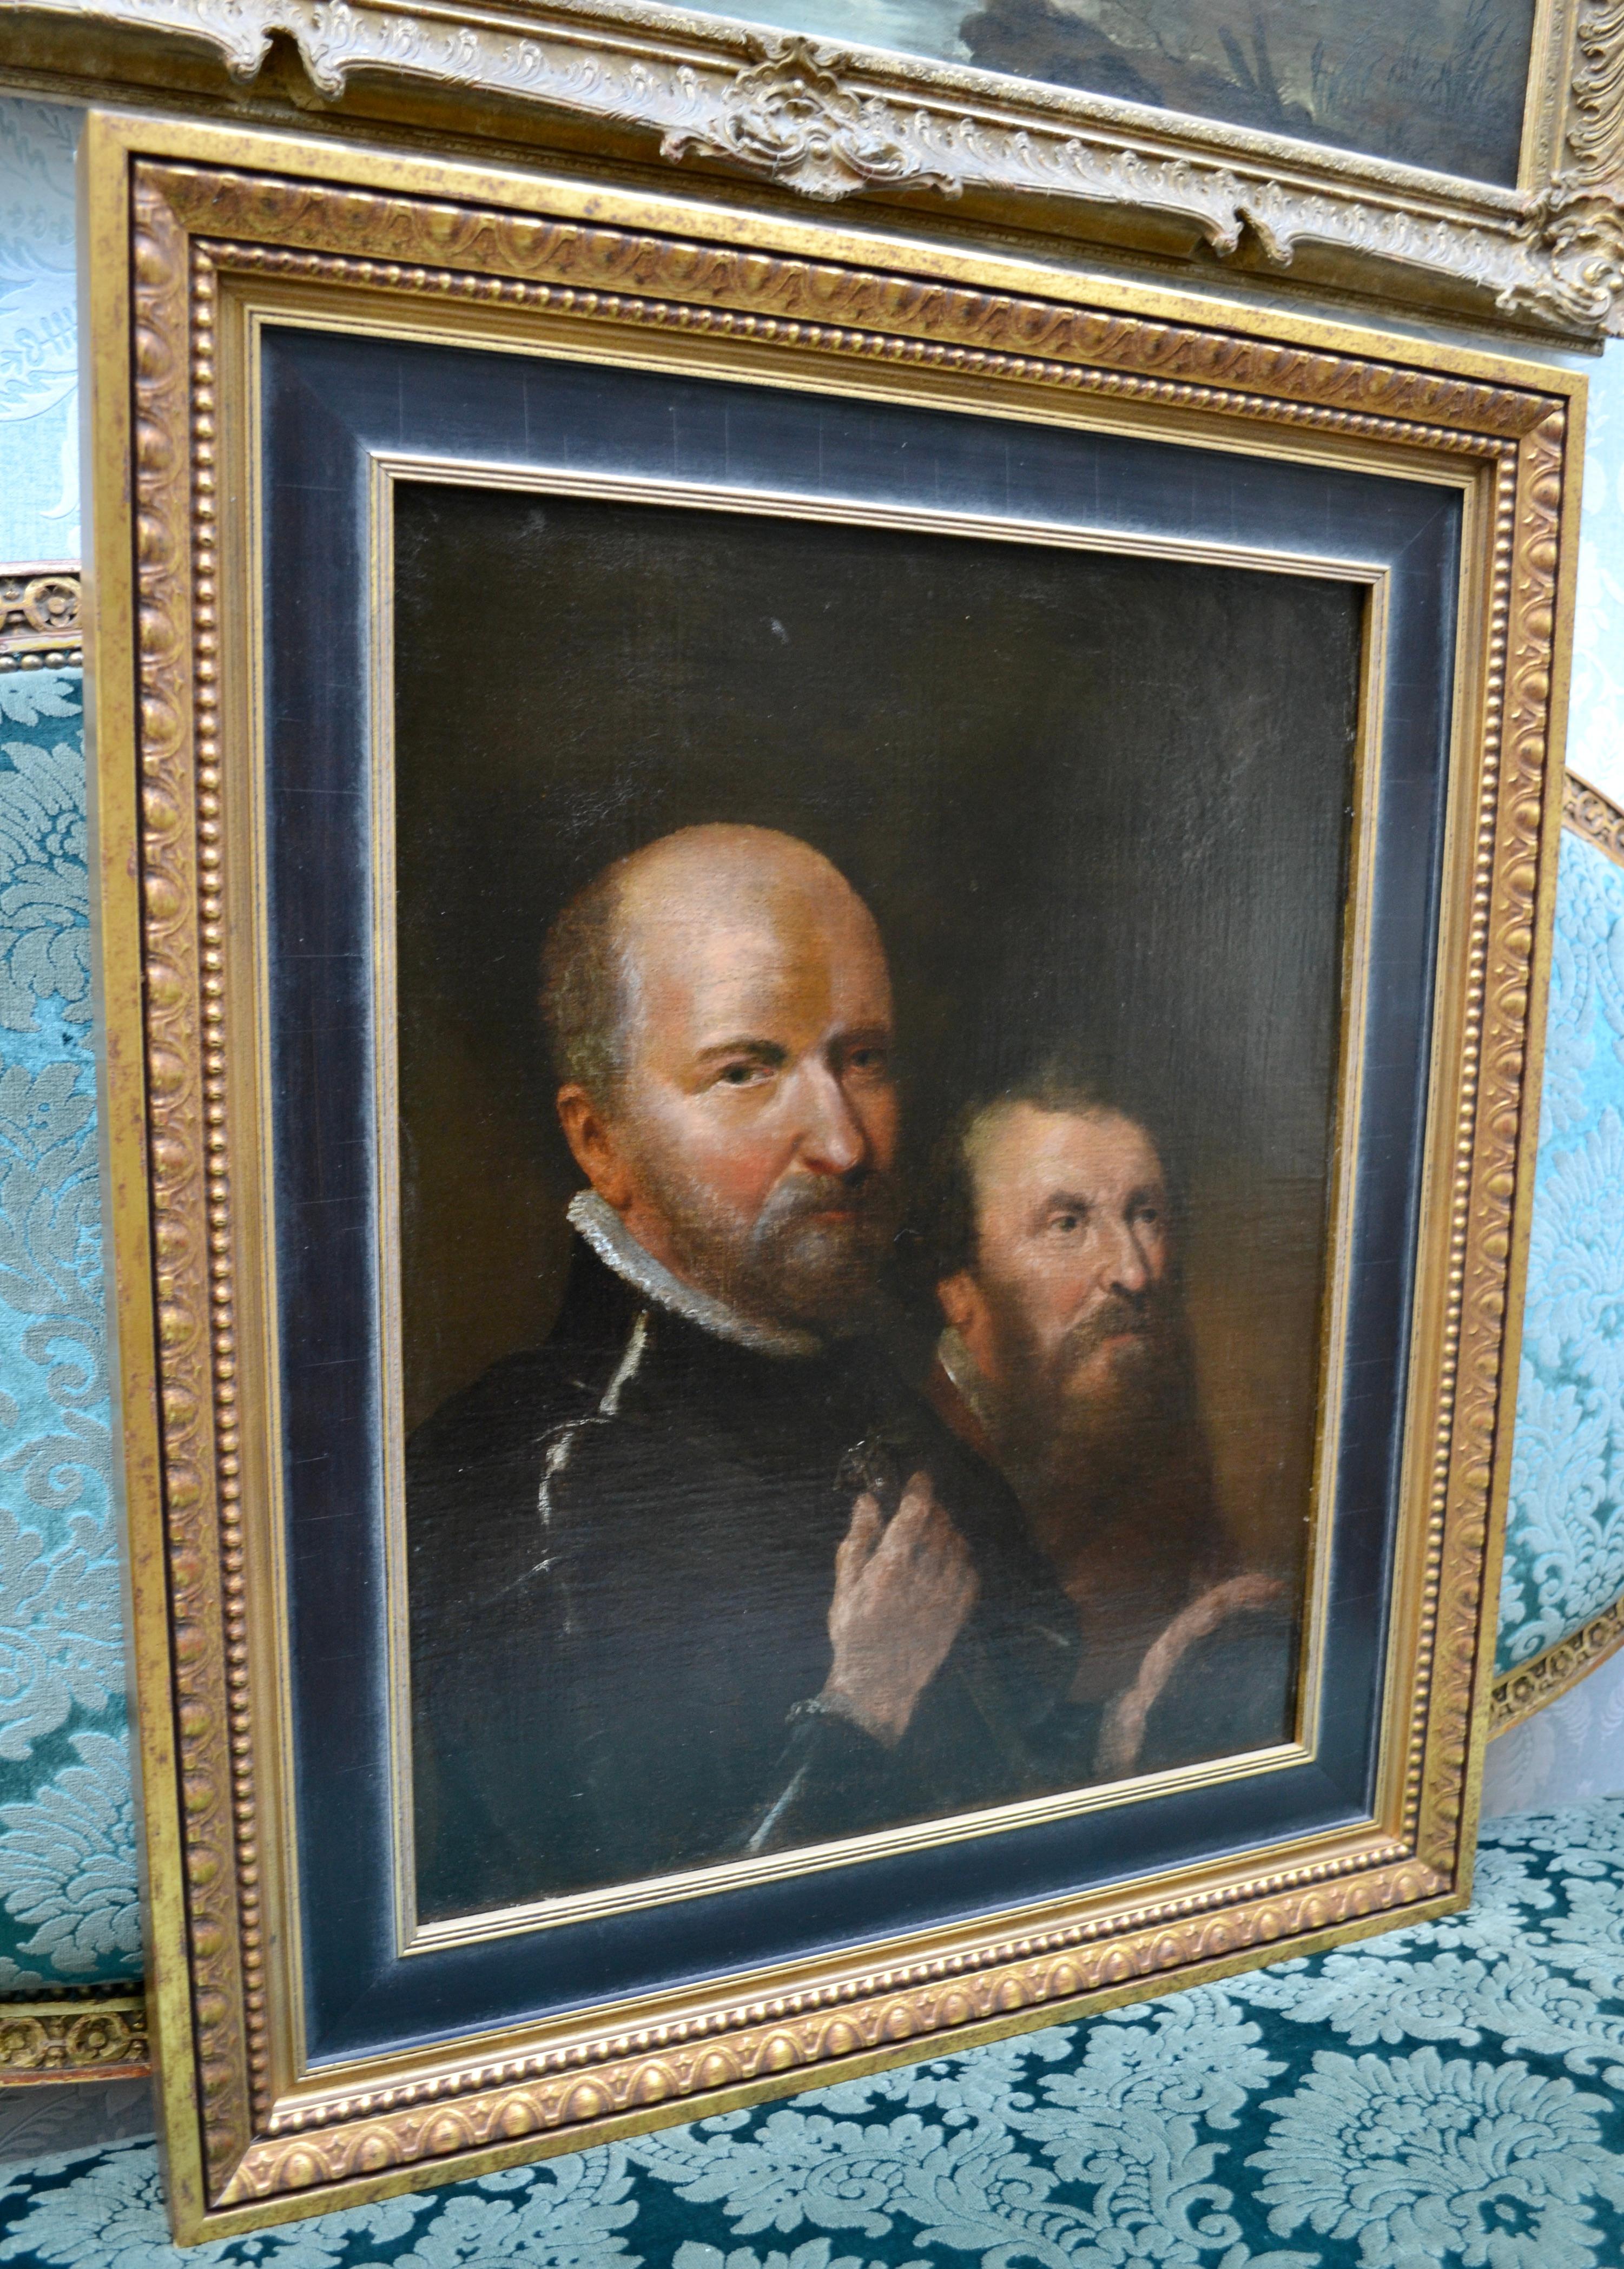 Une toile non signée représentant deux hommes barbus de la Renaissance, peints à partir de la taille, dans une étreinte amoureuse postérieure. Le tableau est très probablement anglais de la fin du 17e ou du 18e siècle. Le revêtement a été refait il